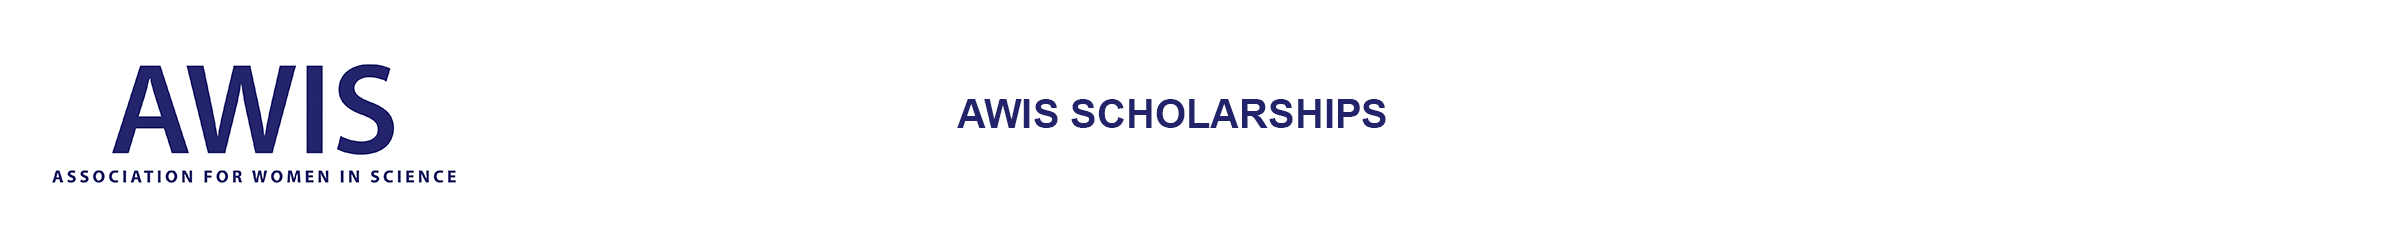 AWIS Scholarships logo